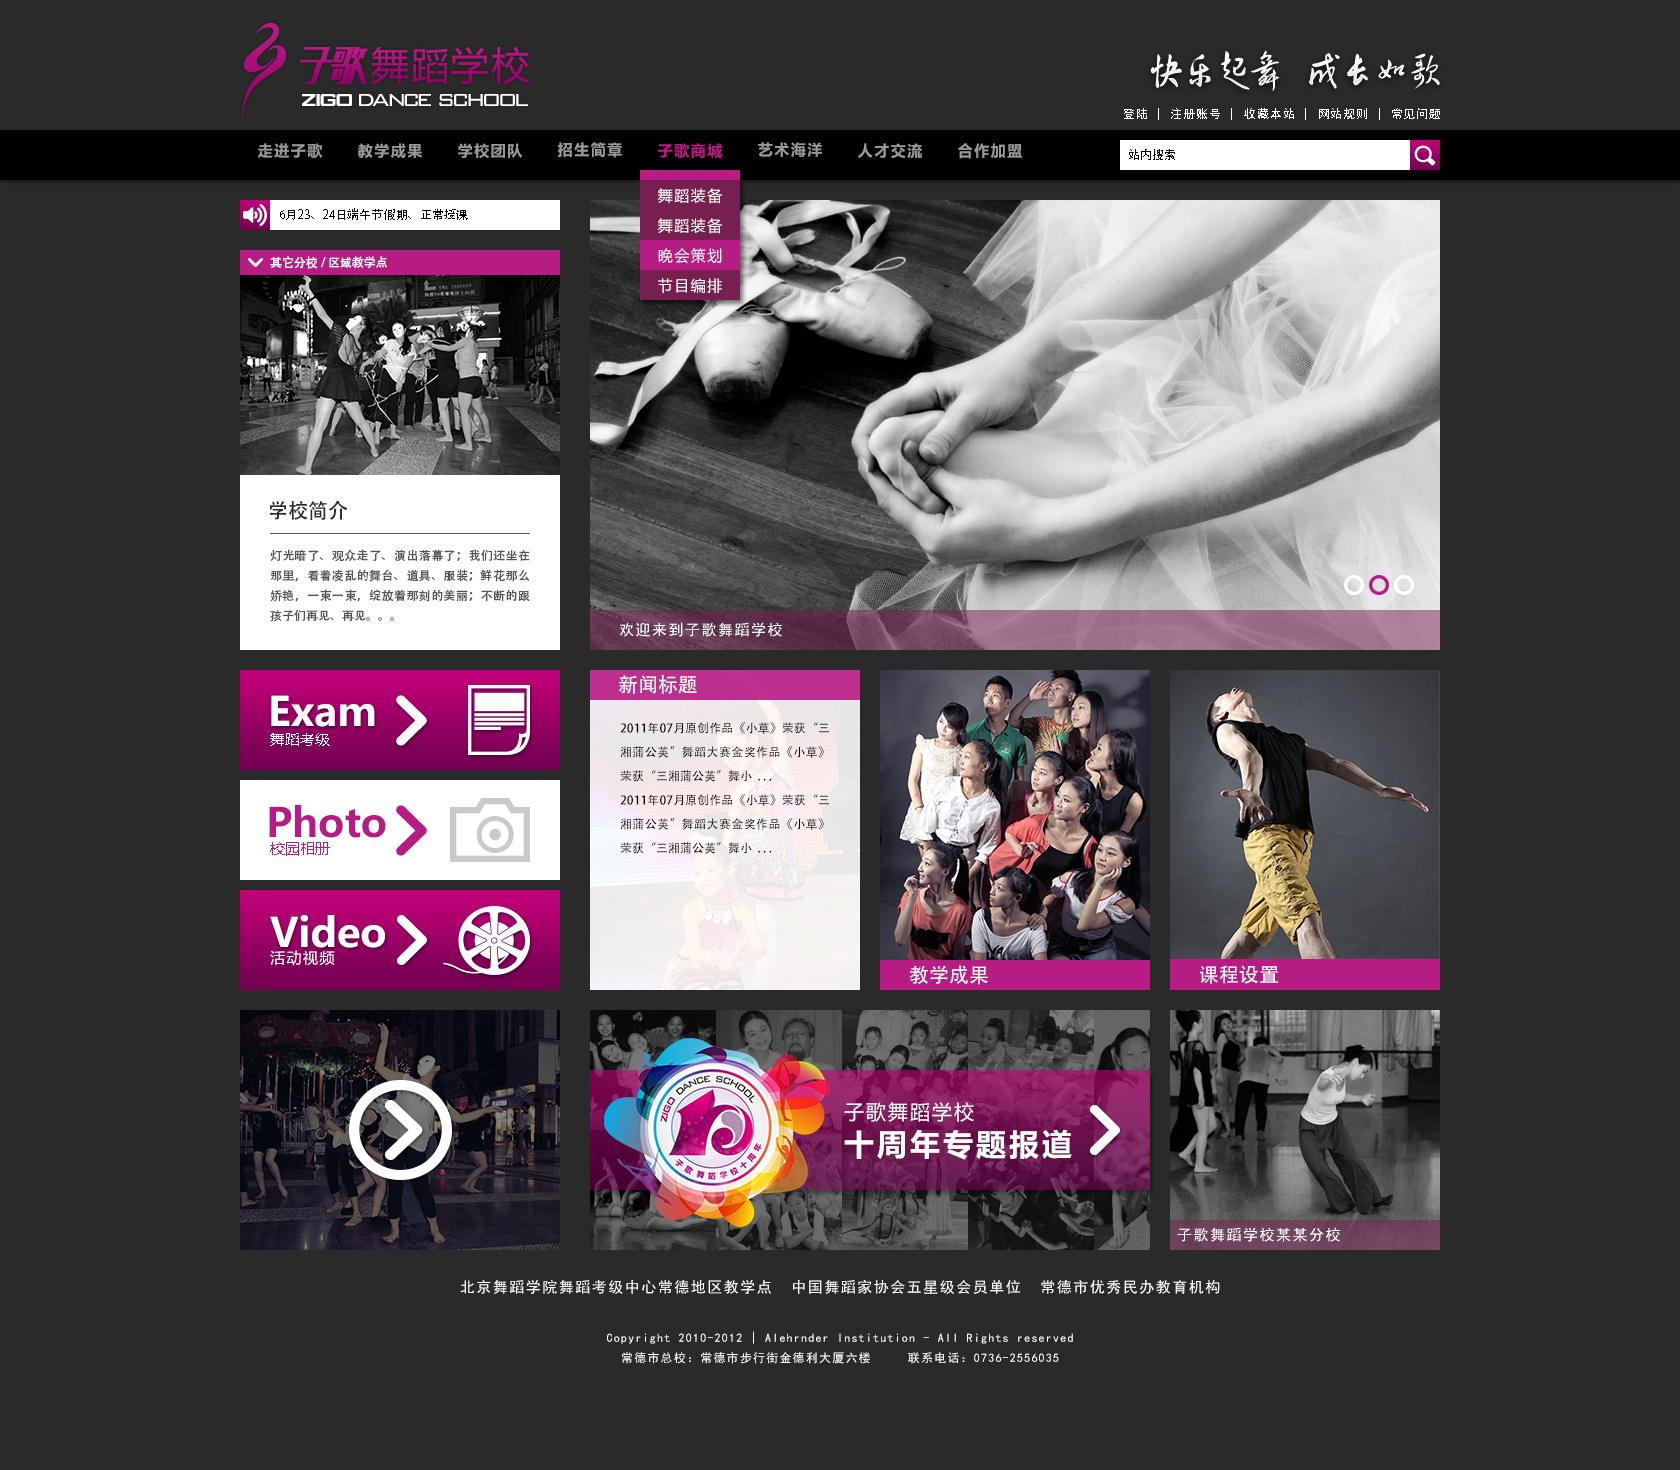 子歌舞蹈网站首页设计稿